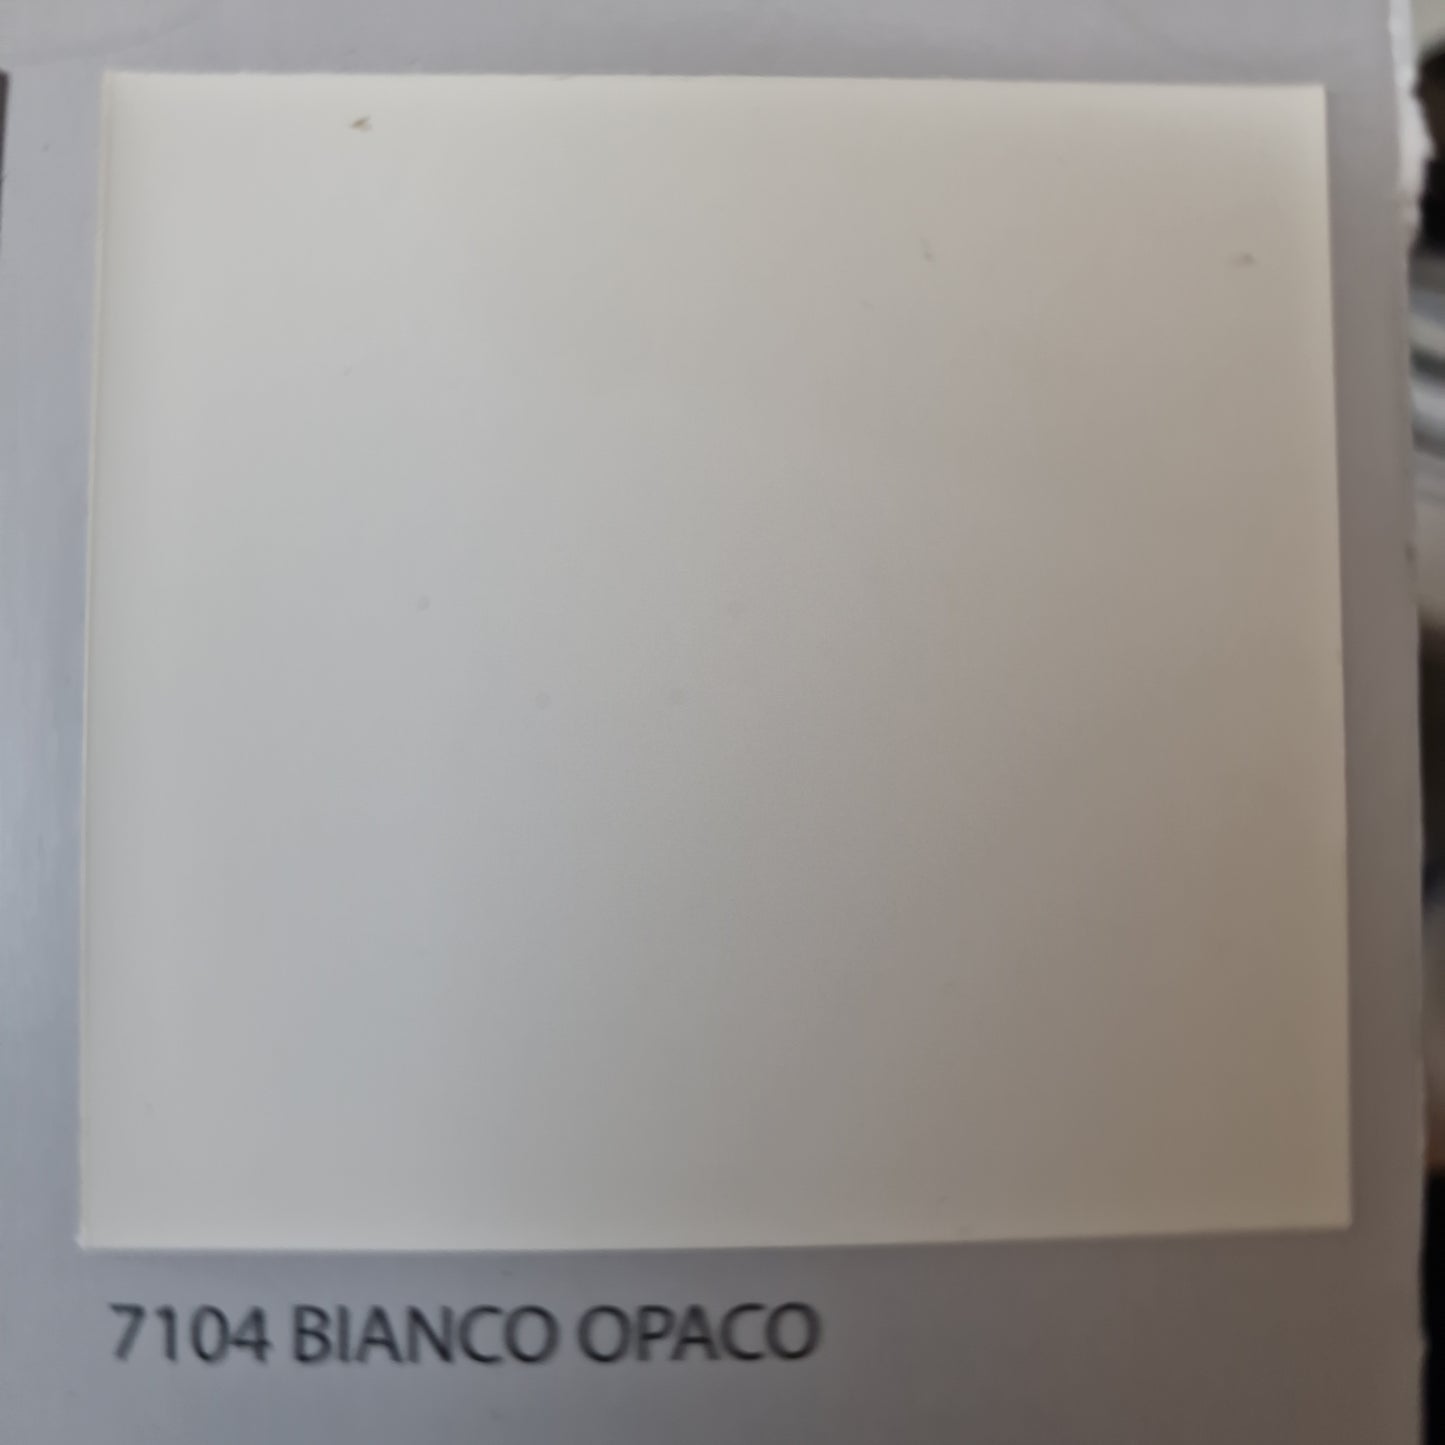 PERTRE SMALTO ANTIRUGGINE BIANCO OPACO 0,75Lt